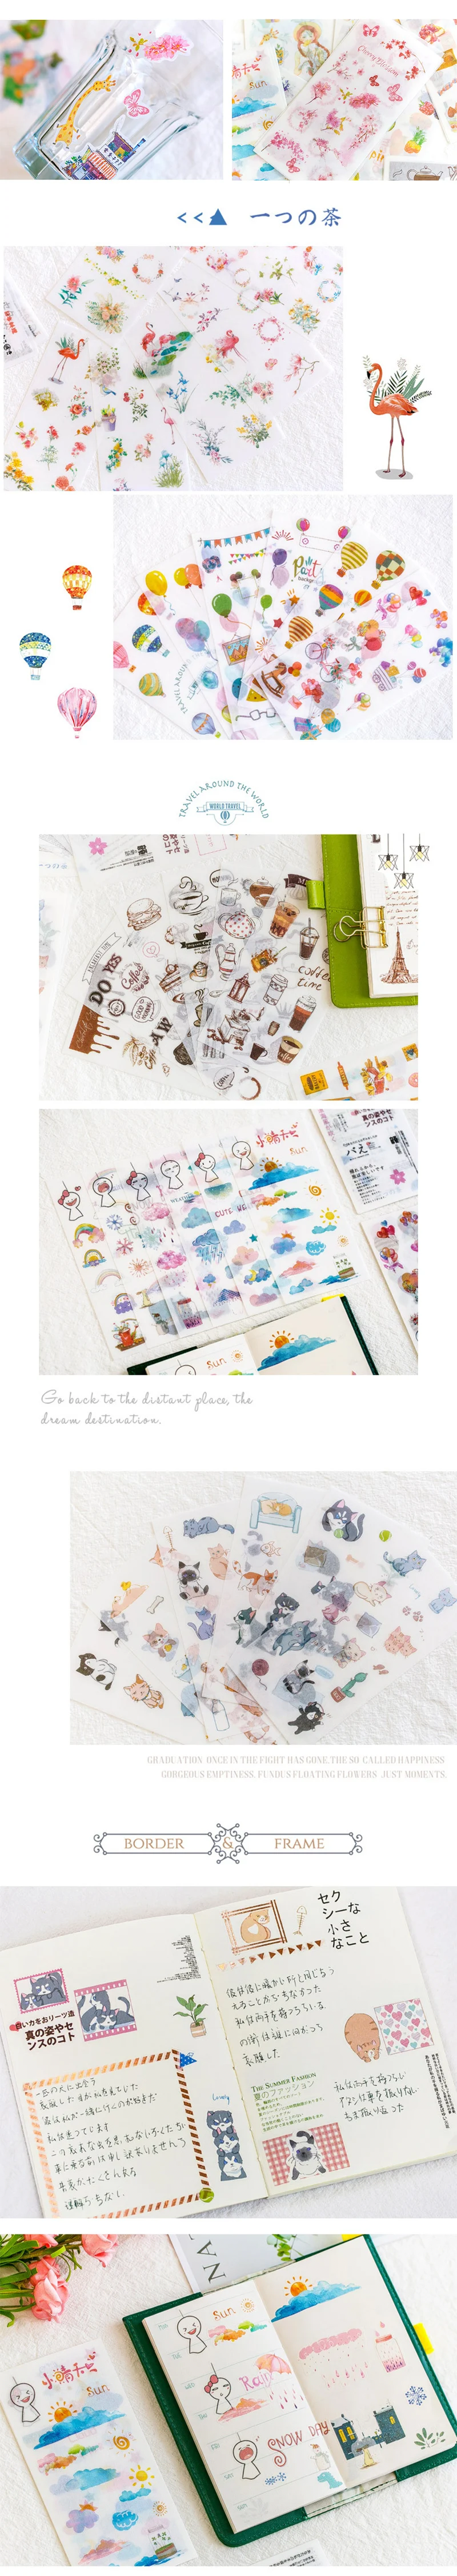 6 шт/лот Yuxian мультфильм акварельные детские бумажные наклейки посылка DIY Дневник украшения наклейки альбом Скрапбукинг